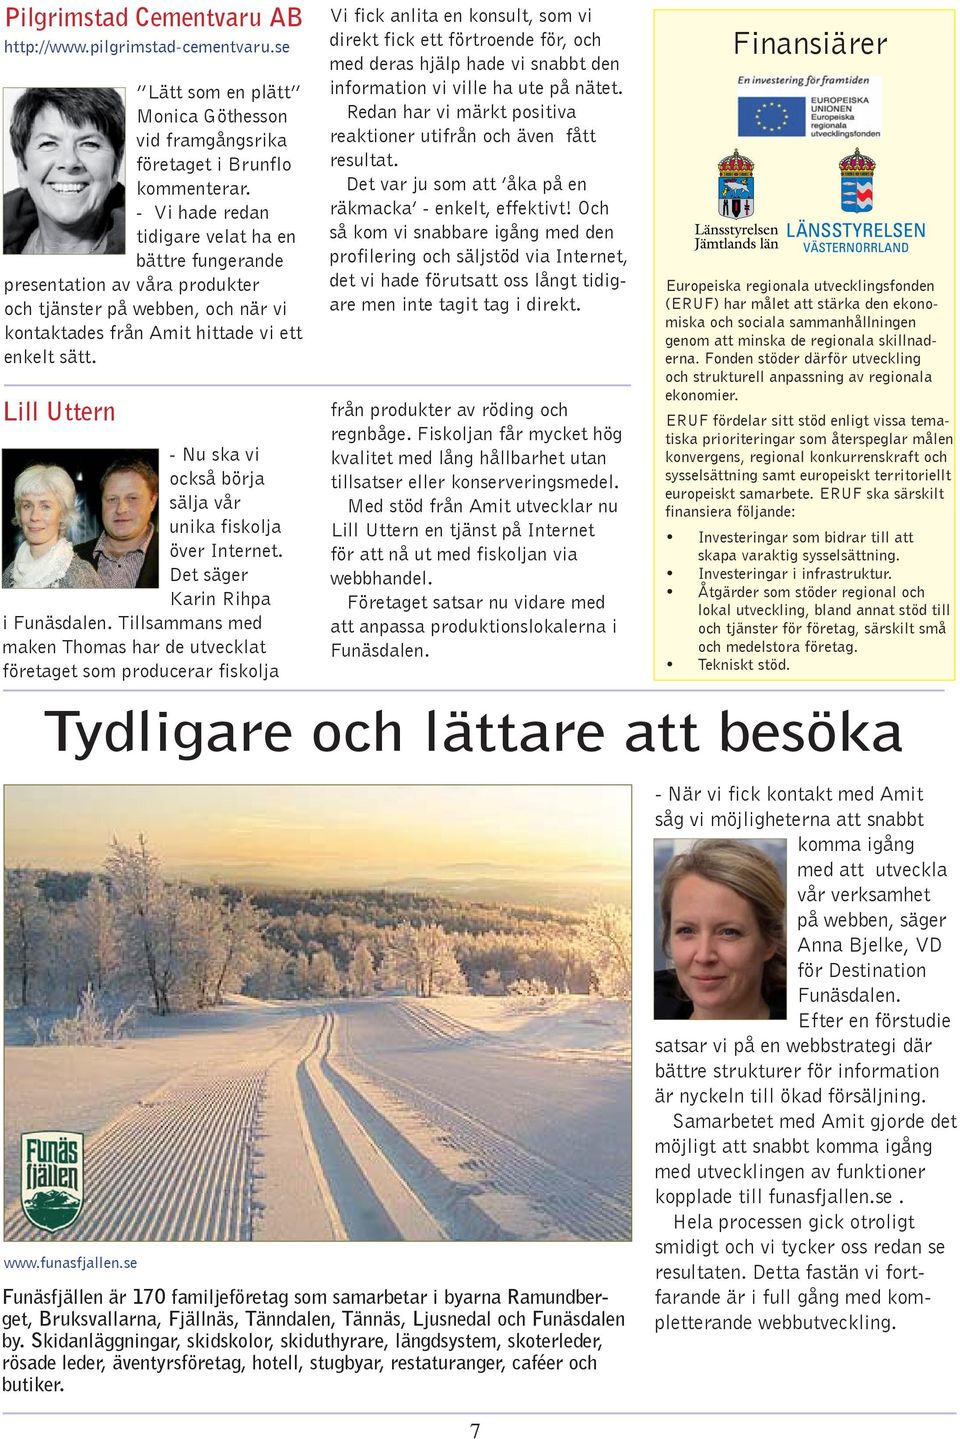 Lill Uttern - Nu ska vi också börja sälja vår unika fiskolja över Internet. Det säger Karin Rihpa i Funäsdalen.